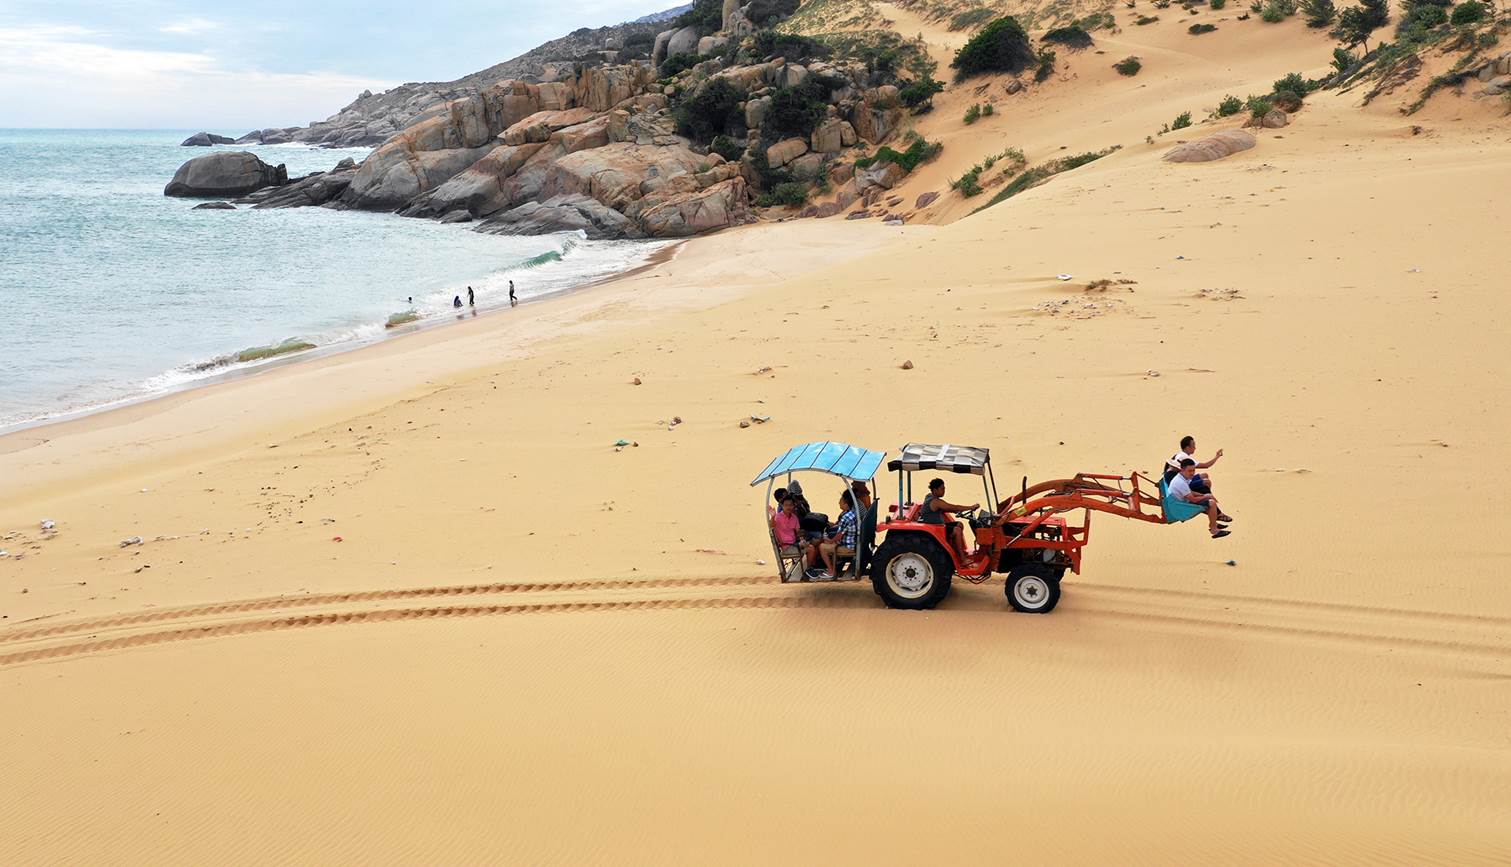 Xe xúc chở khách vượt đồi cát